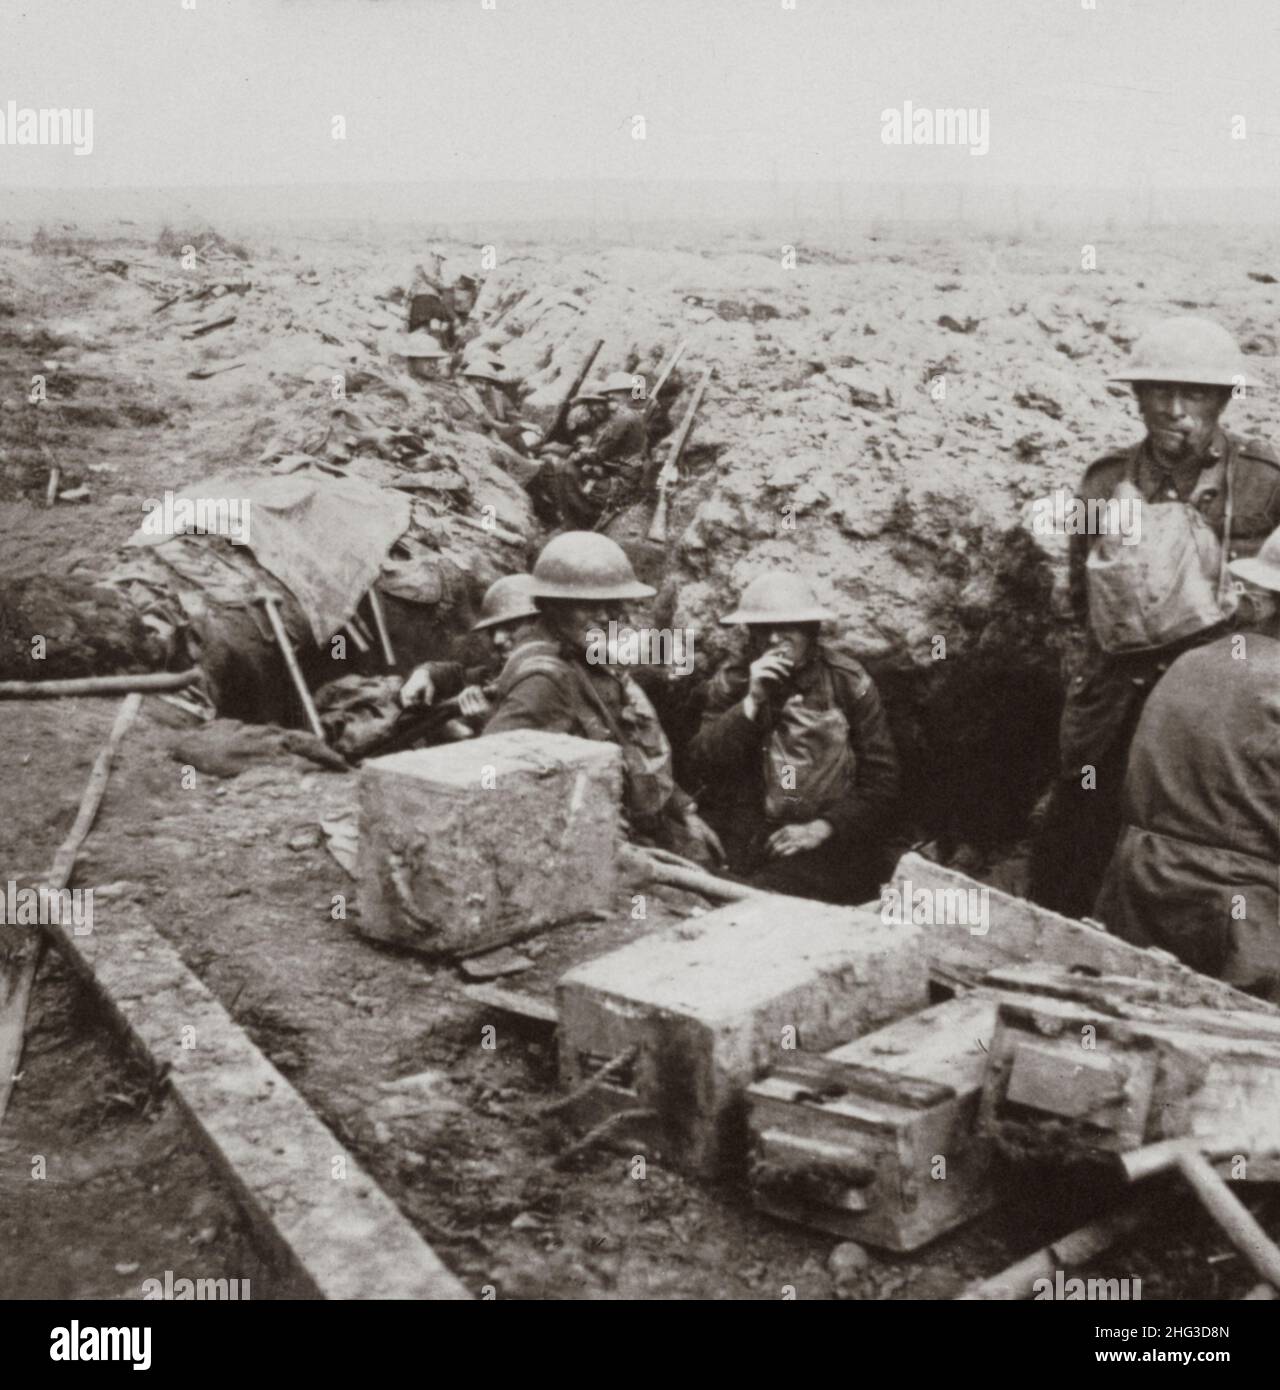 Foto vintage de la Primera Guerra Mundial 1914-1918. Escoceses de acero atrincherados y alegremente esperando un contraataque. Foto de stock